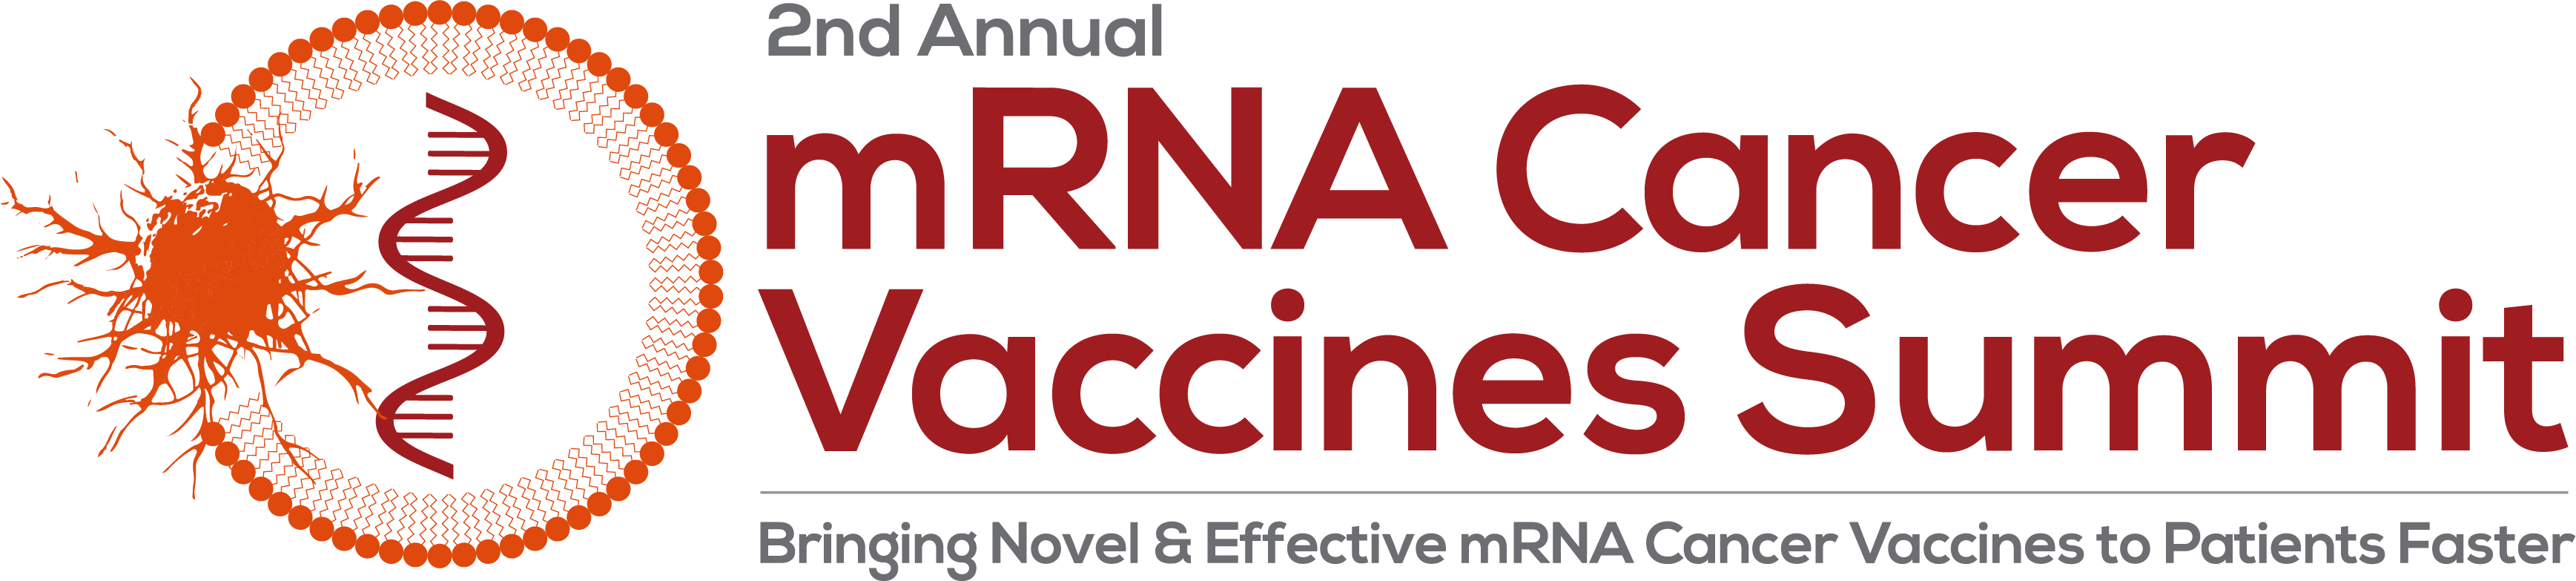 2nd Annual mRNA Cancer Vaccines Summit STRAPLINE